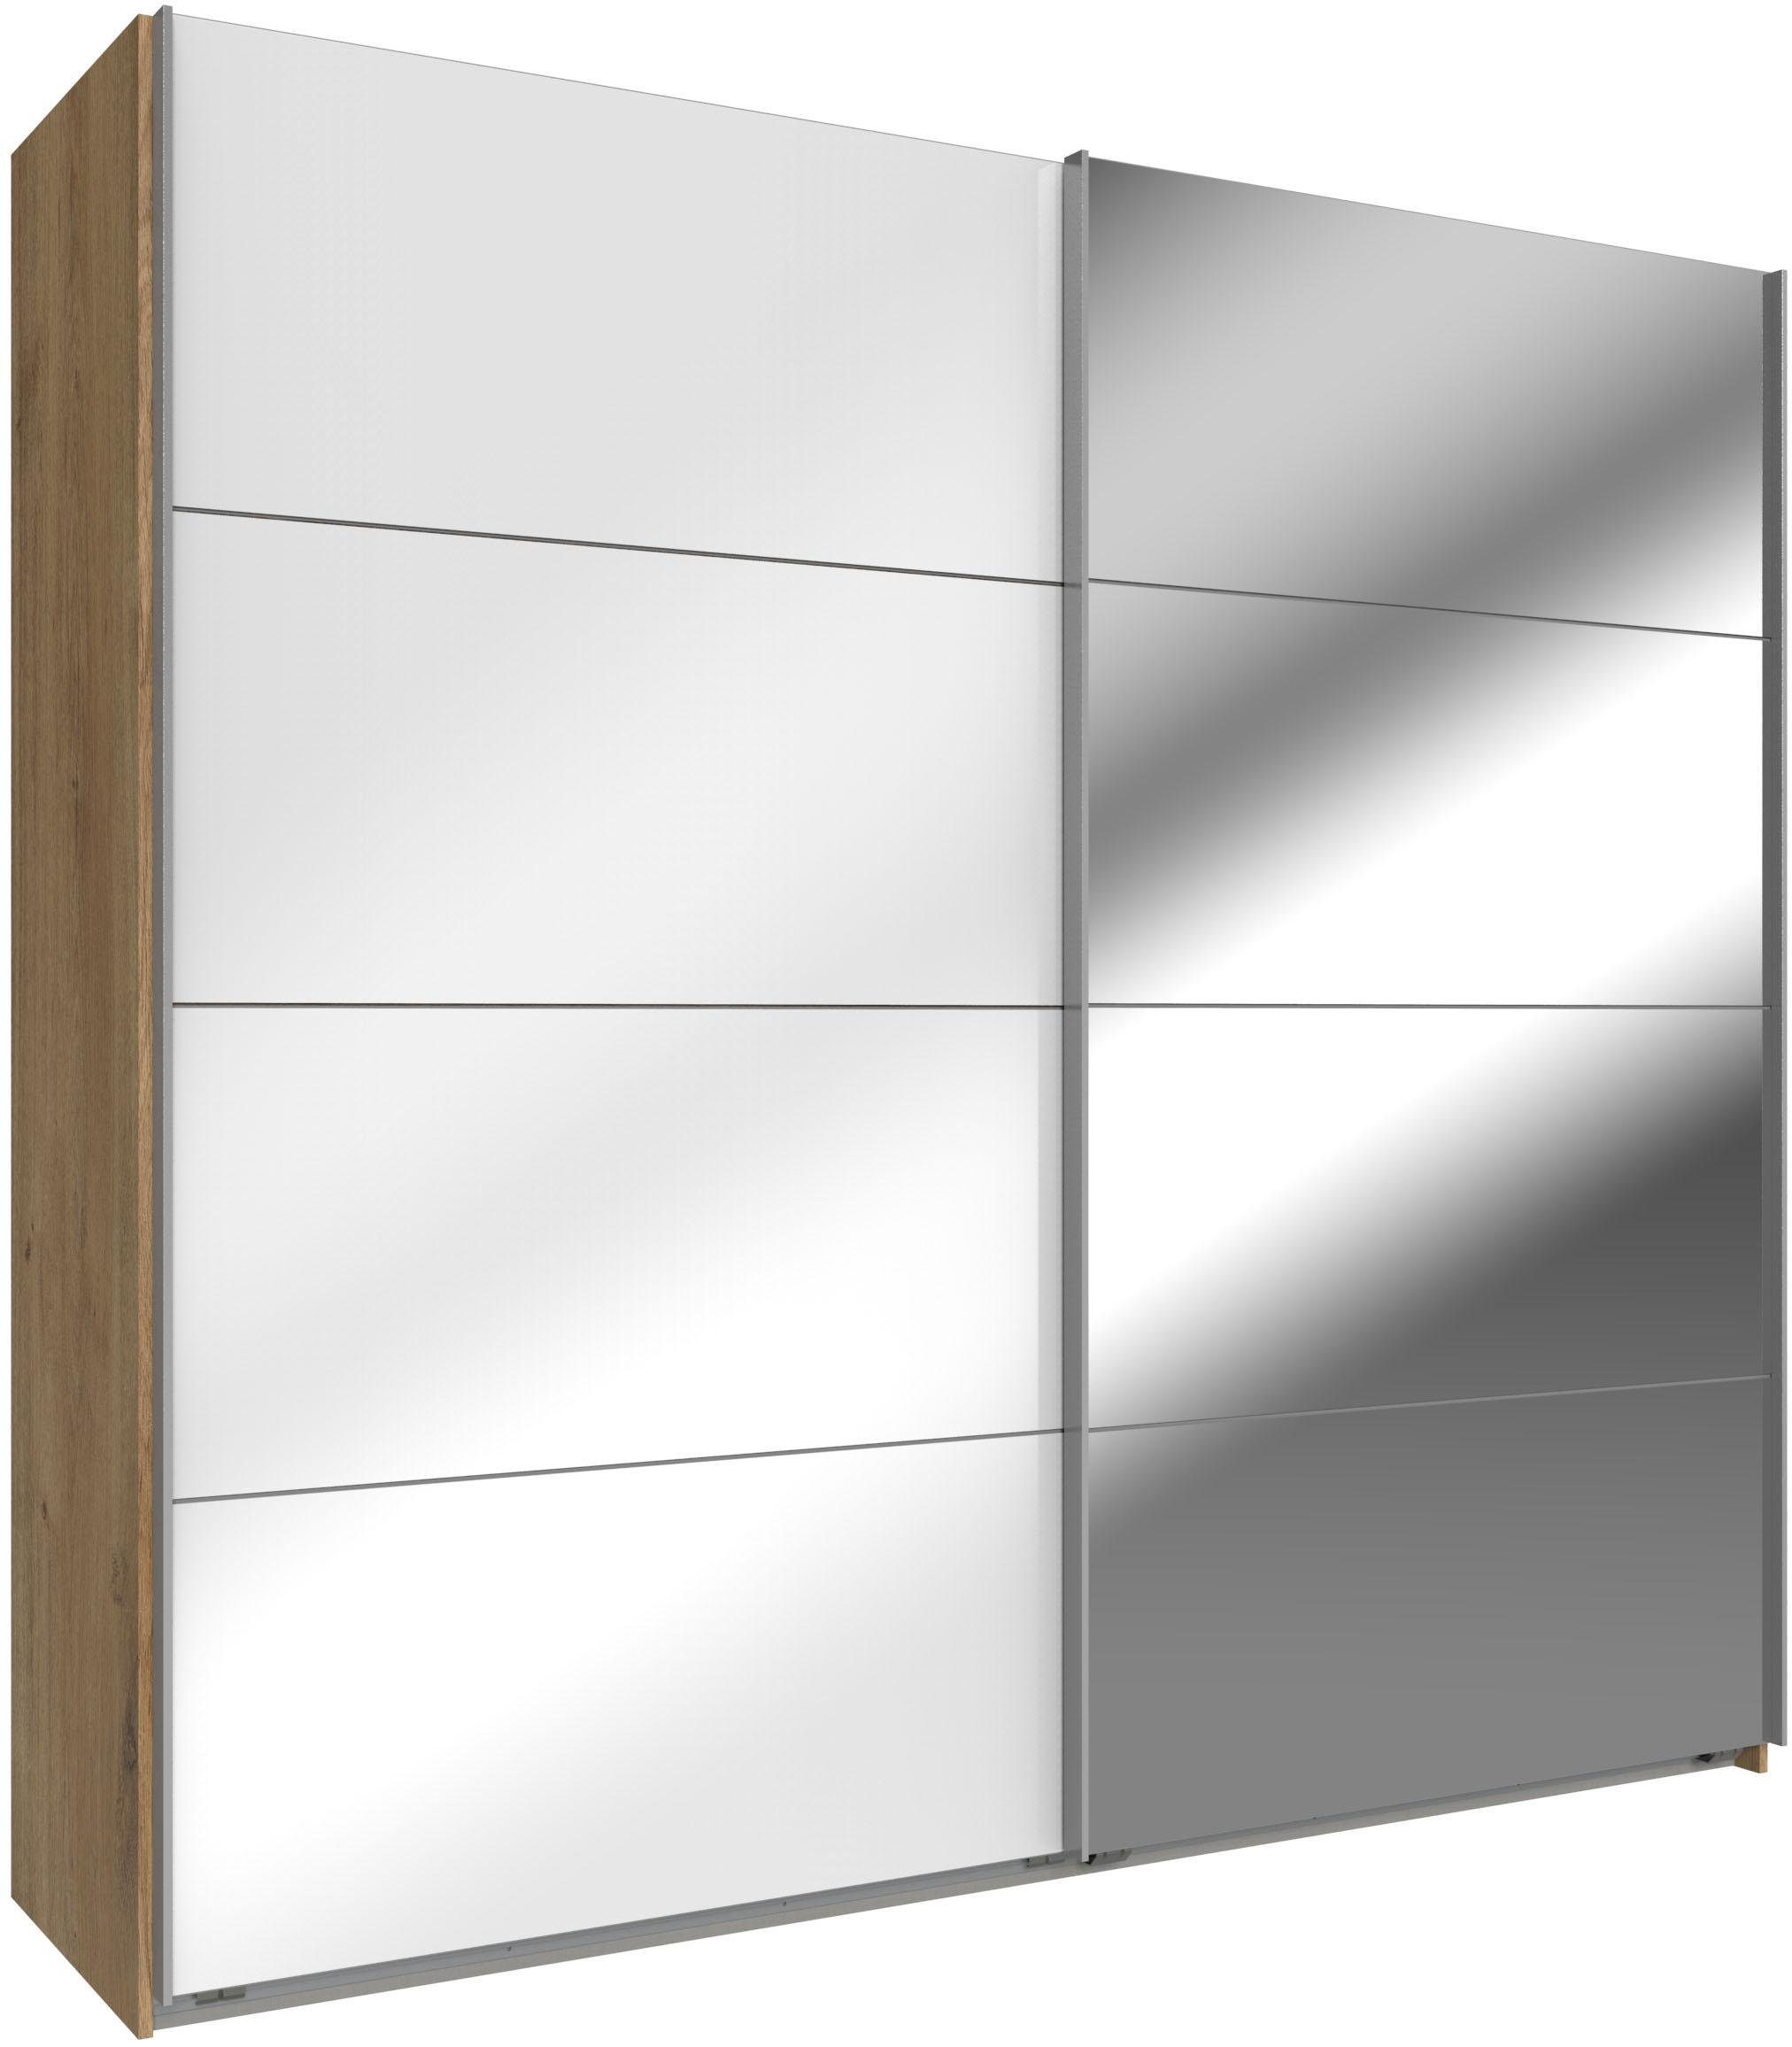 Wimex Schwebetürenschrank Easy mit Glas und Spiegel plankeneichefarben, Weißglas/Spiegel